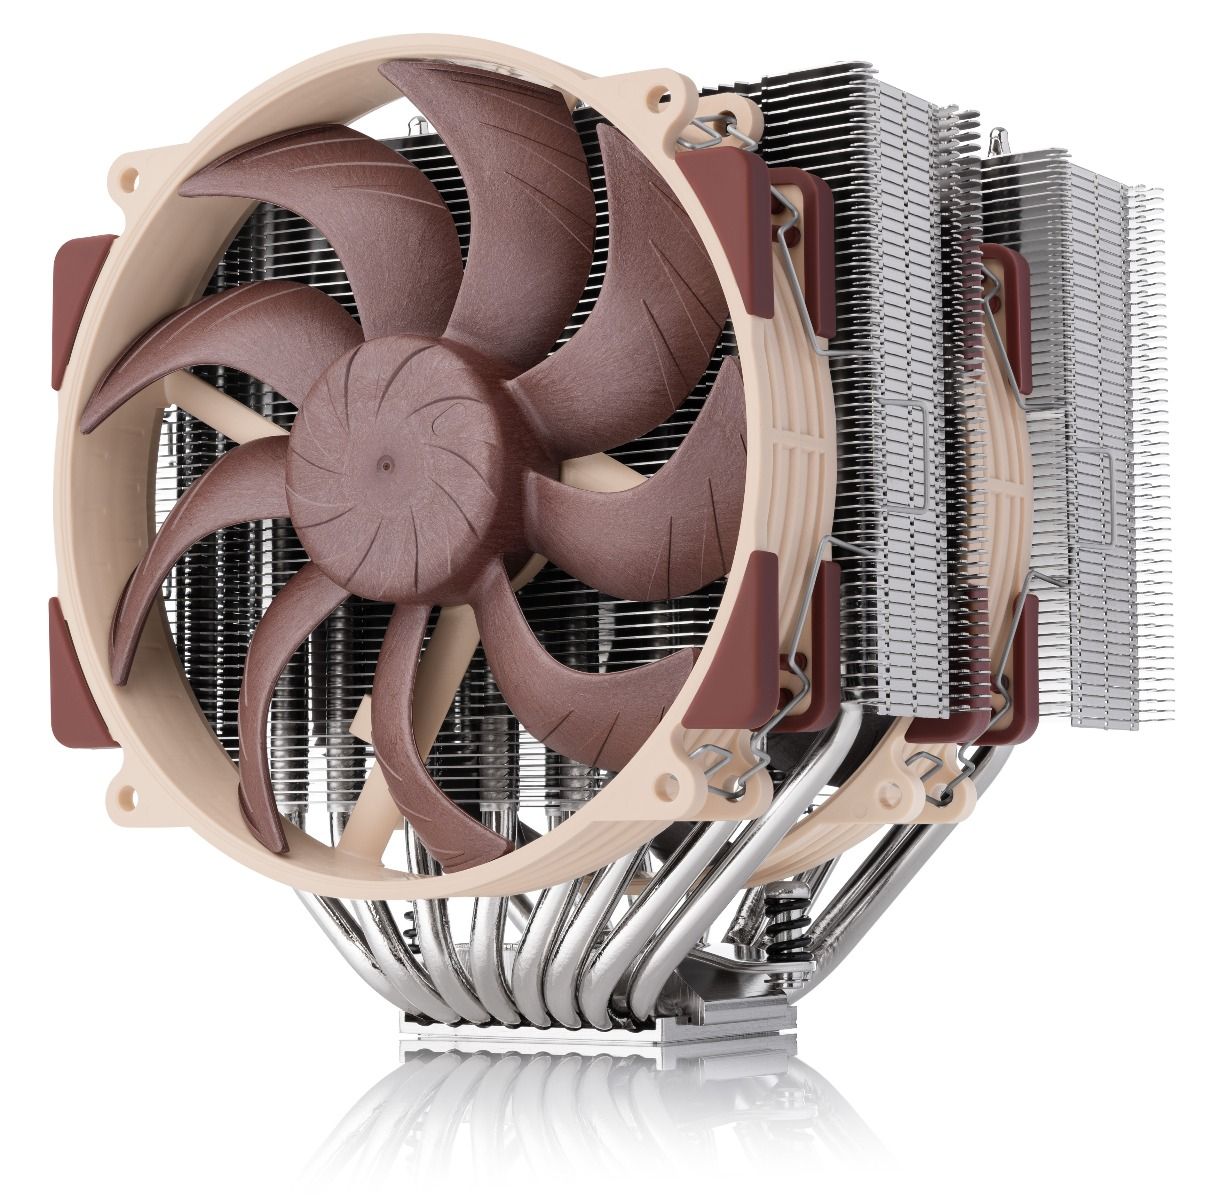 Noctua releases its NH-D15 G2 next-gen flagship model CPU cooler